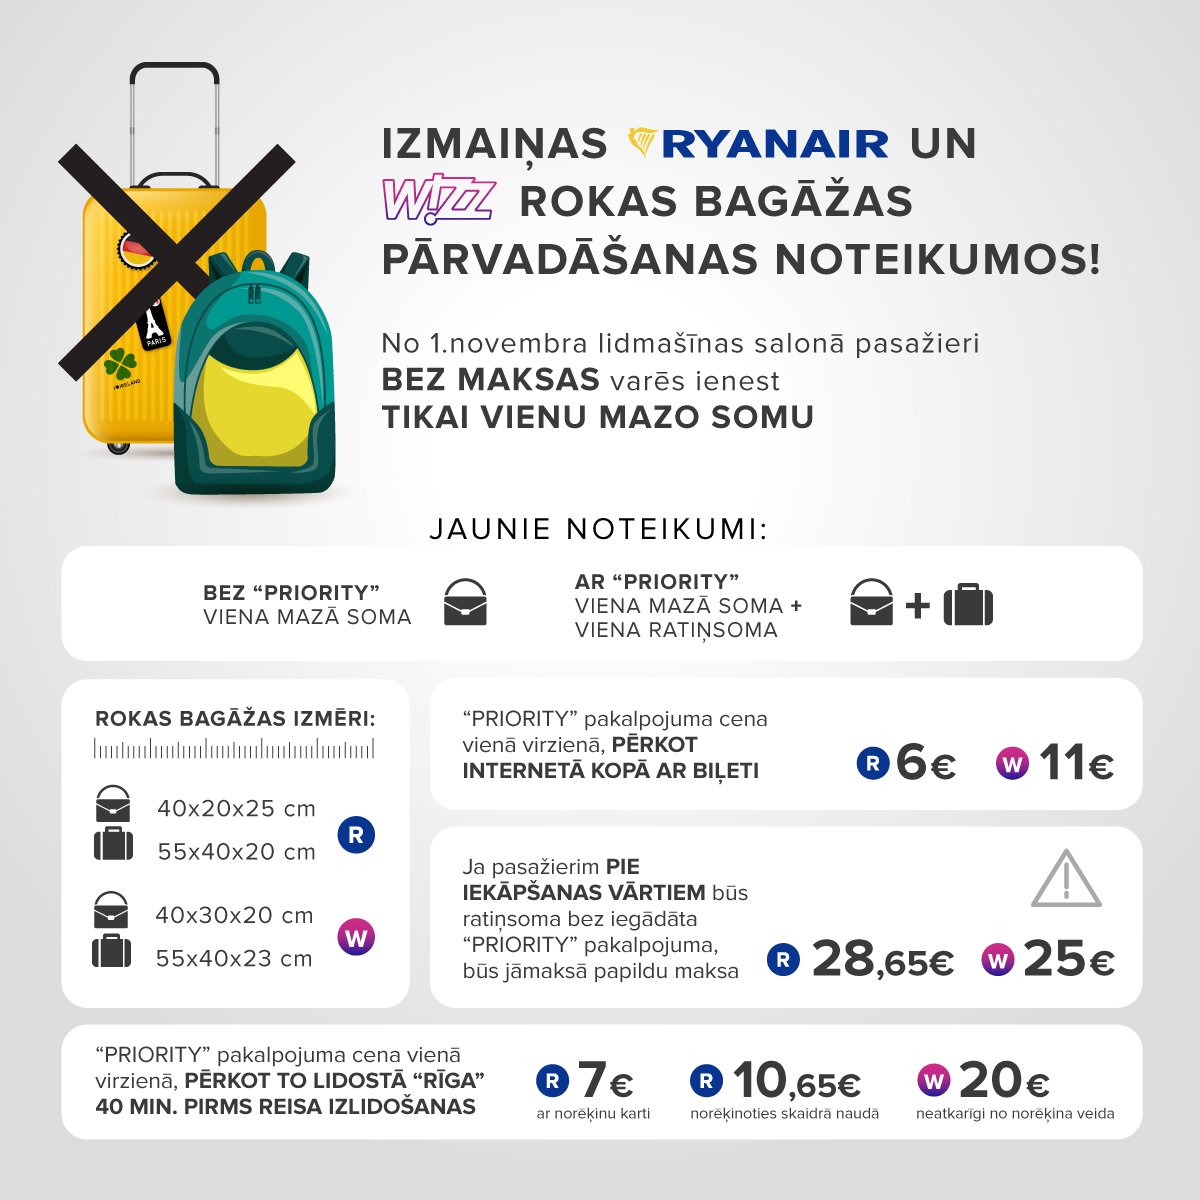 Riga Airport on Twitter: "Uzmanību! No 1.novembra stājas spēkā jauni  @wizzair un @Ryanair rokas bagāžas pārvadāšanas noteikumi. Vairāk info:  Wizz Air - https://t.co/kF4aUBpcMt, Ryanair - https://t.co/xc0RFT7nj1.…  https://t.co/vyLzUlyksH"